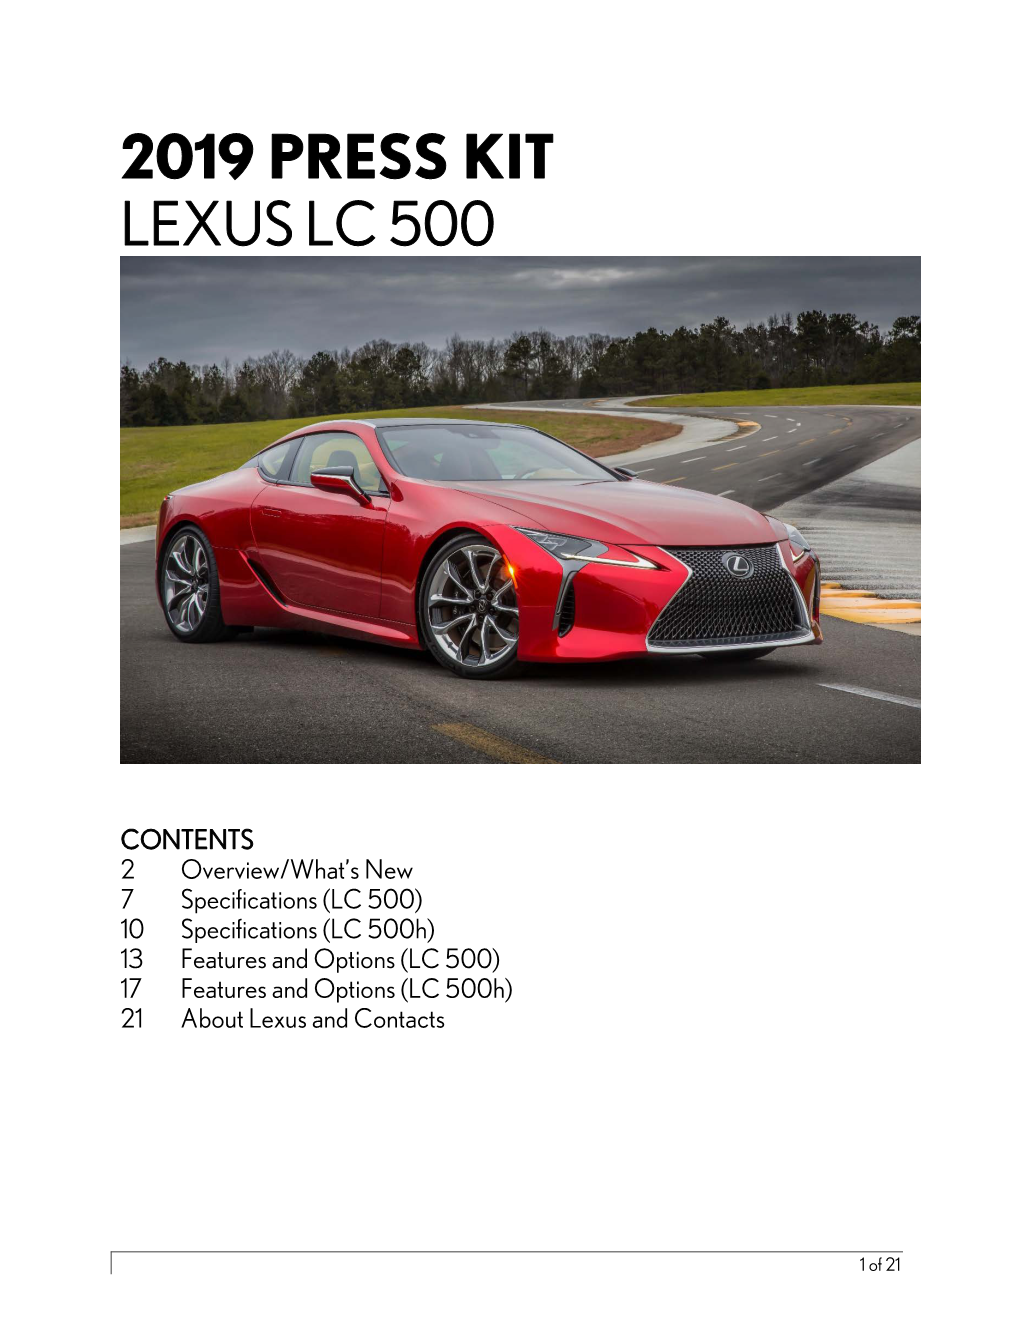 2019 Press Kit Lexus Lc 500